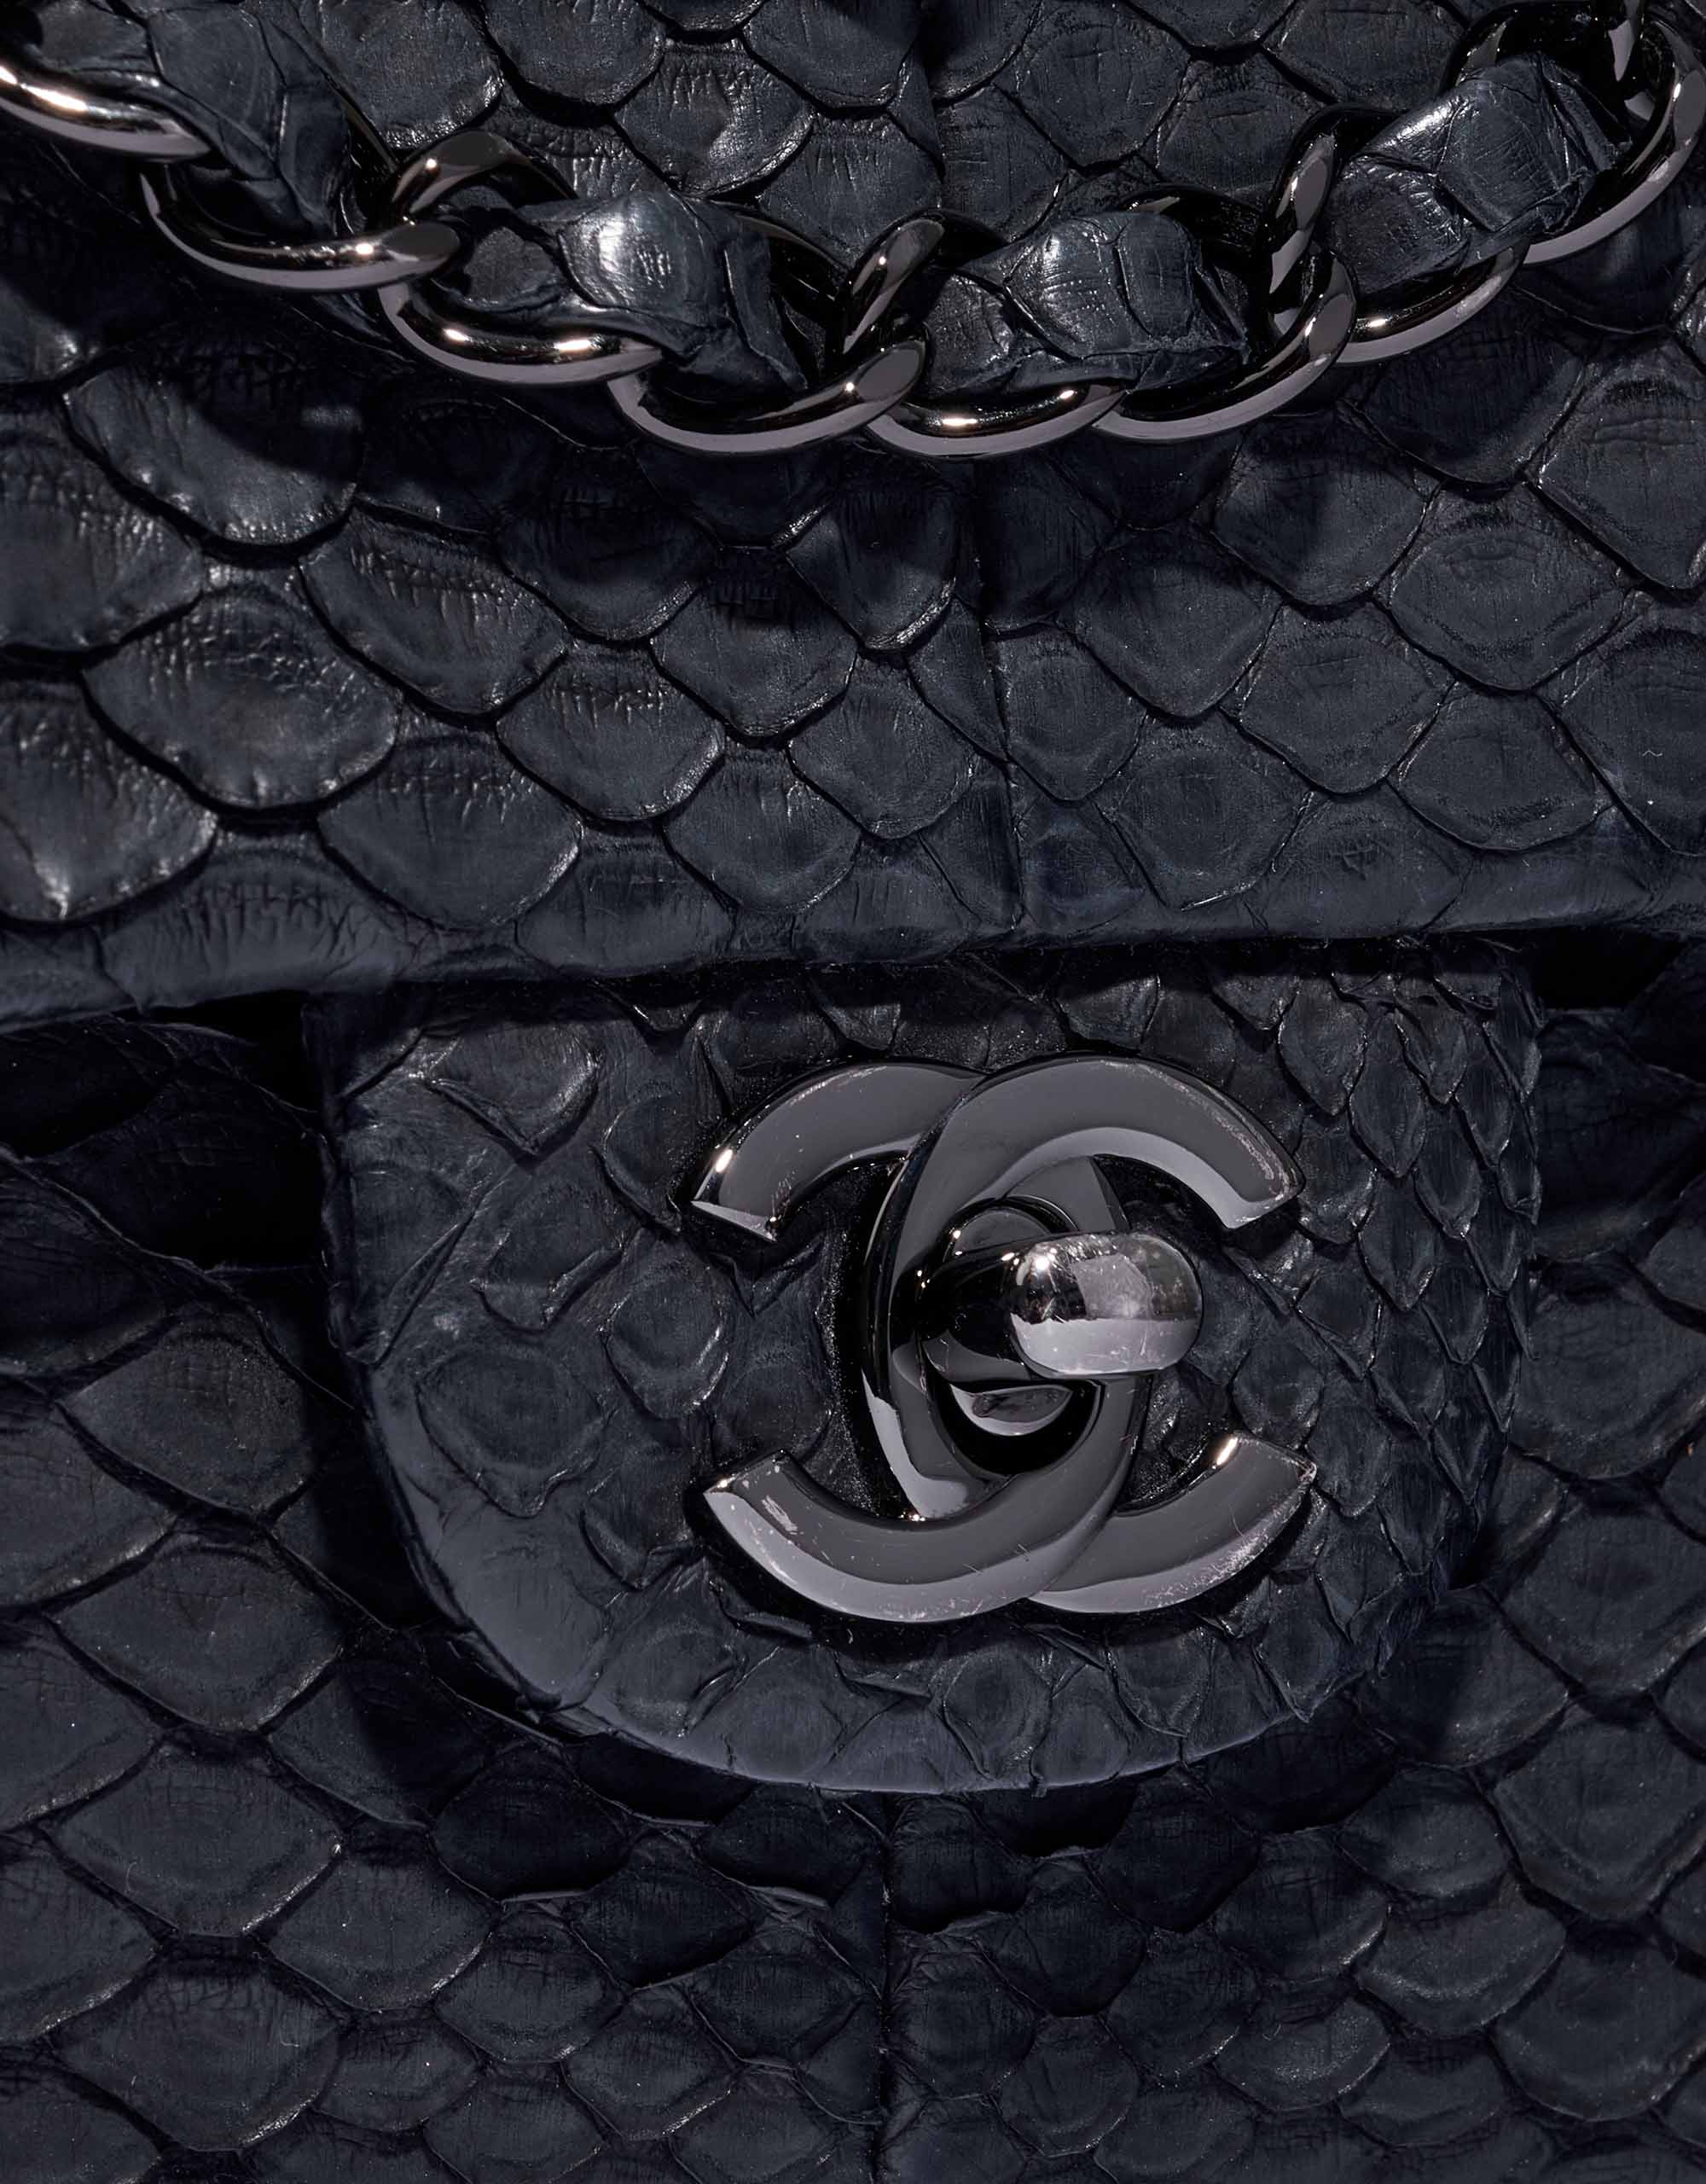 Chanel Timeless mittelgroße Tasche Pythonleder So Black